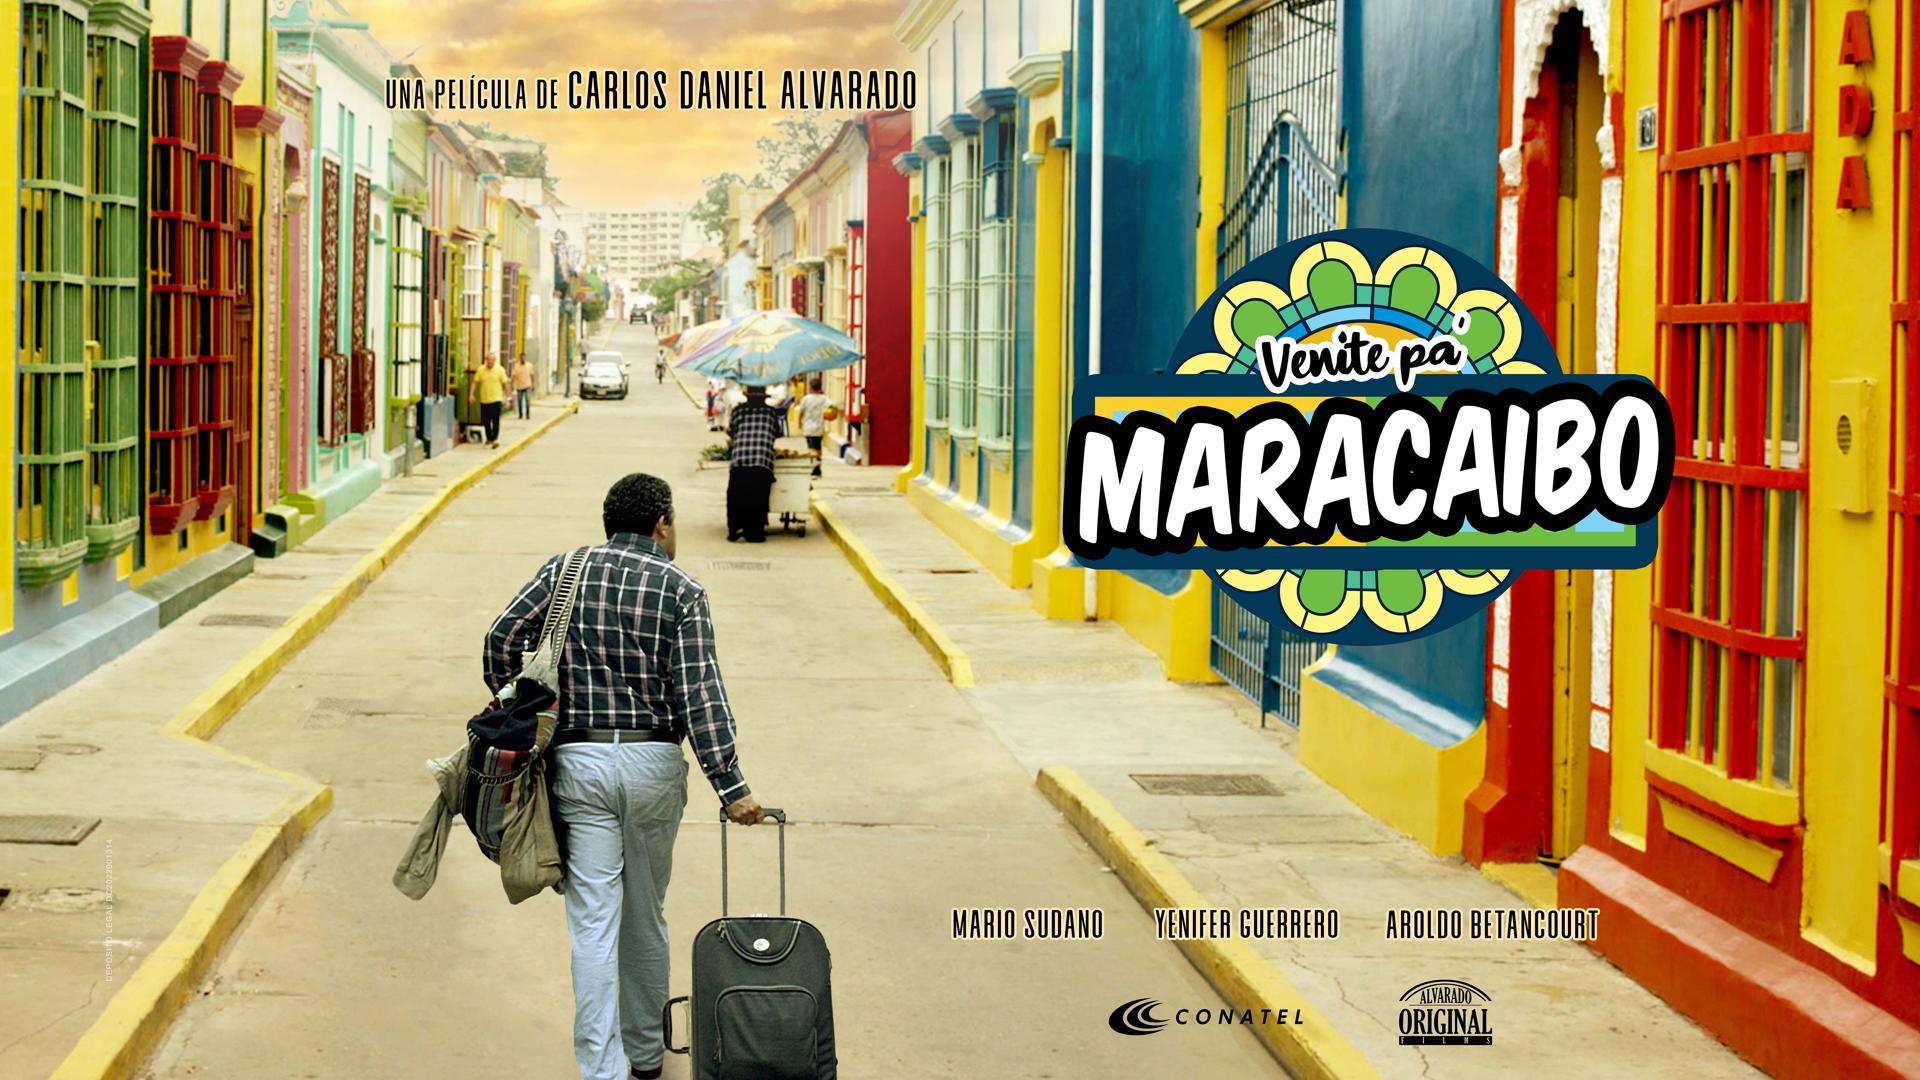 Back to Maracaibo